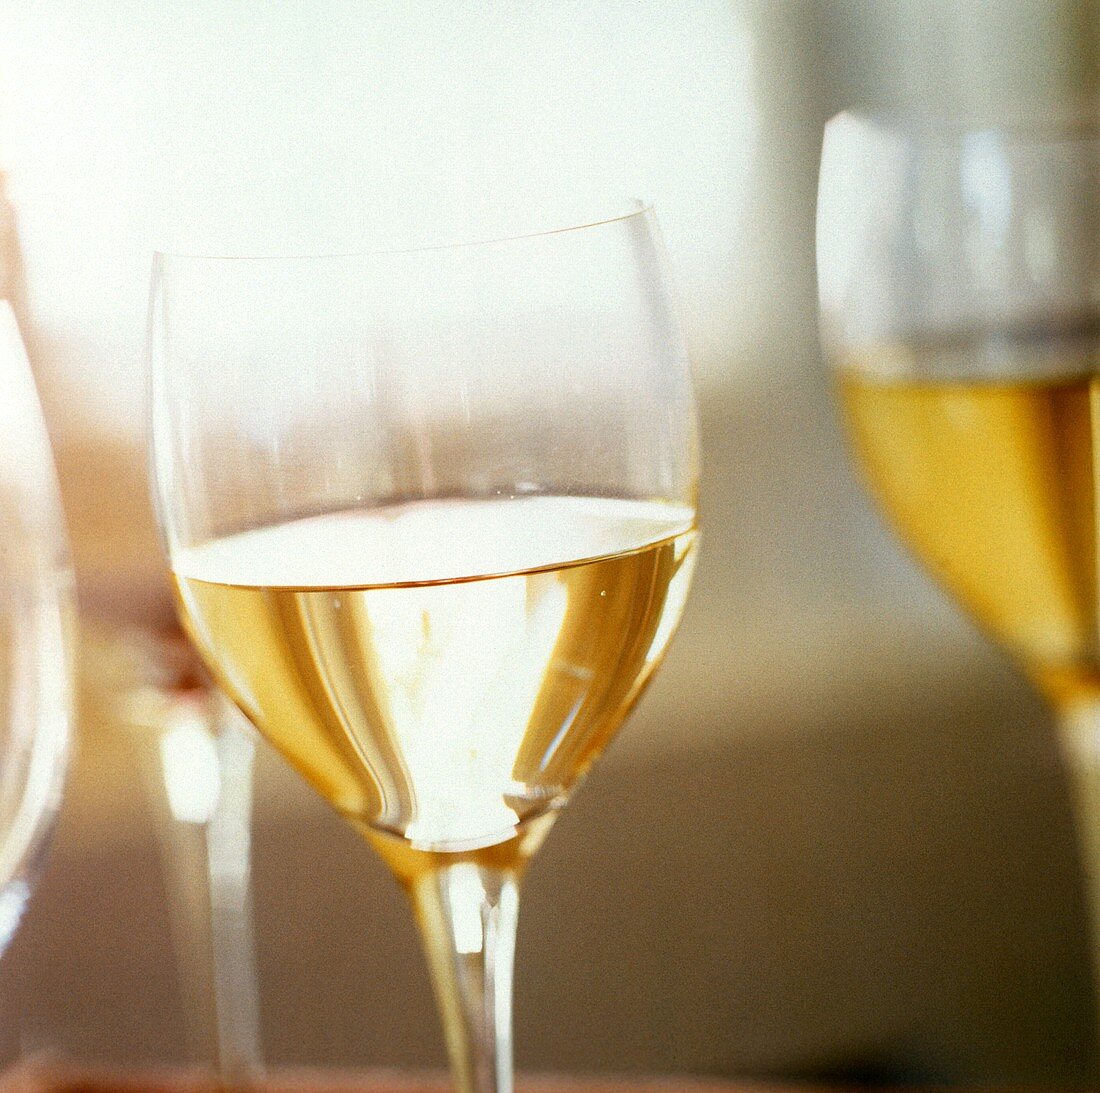 Einige Gläser Weißwein (Sauvignon Blanc)